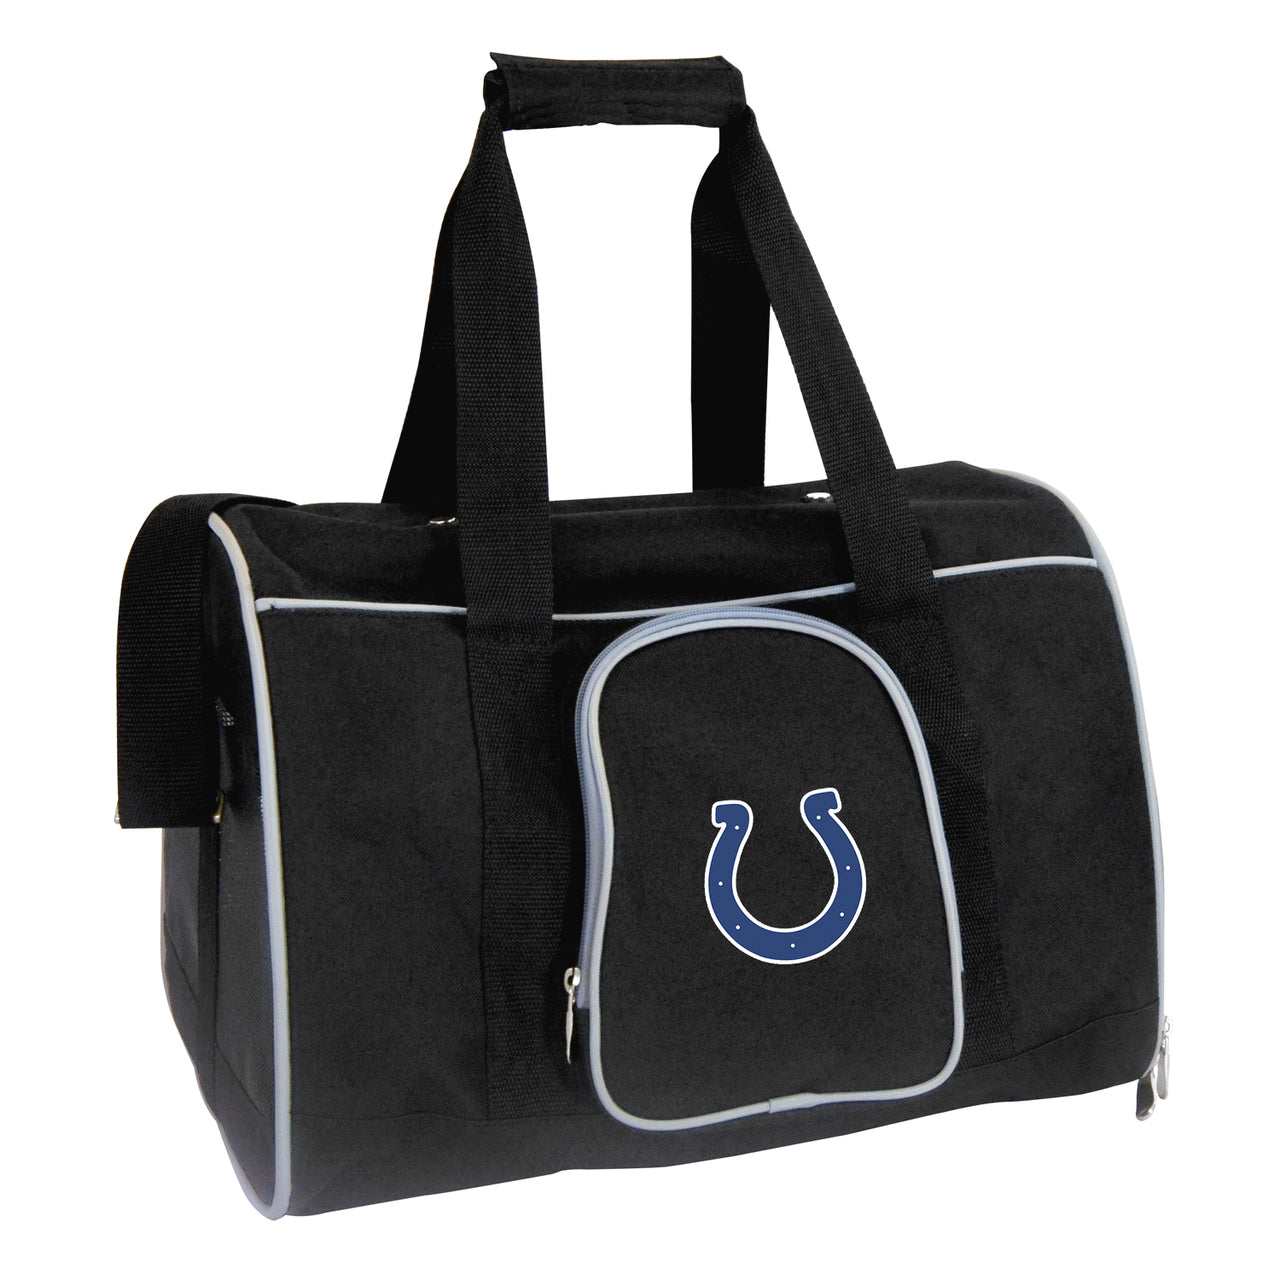 Indianapolis Colts 16" Premium Pet Carrier